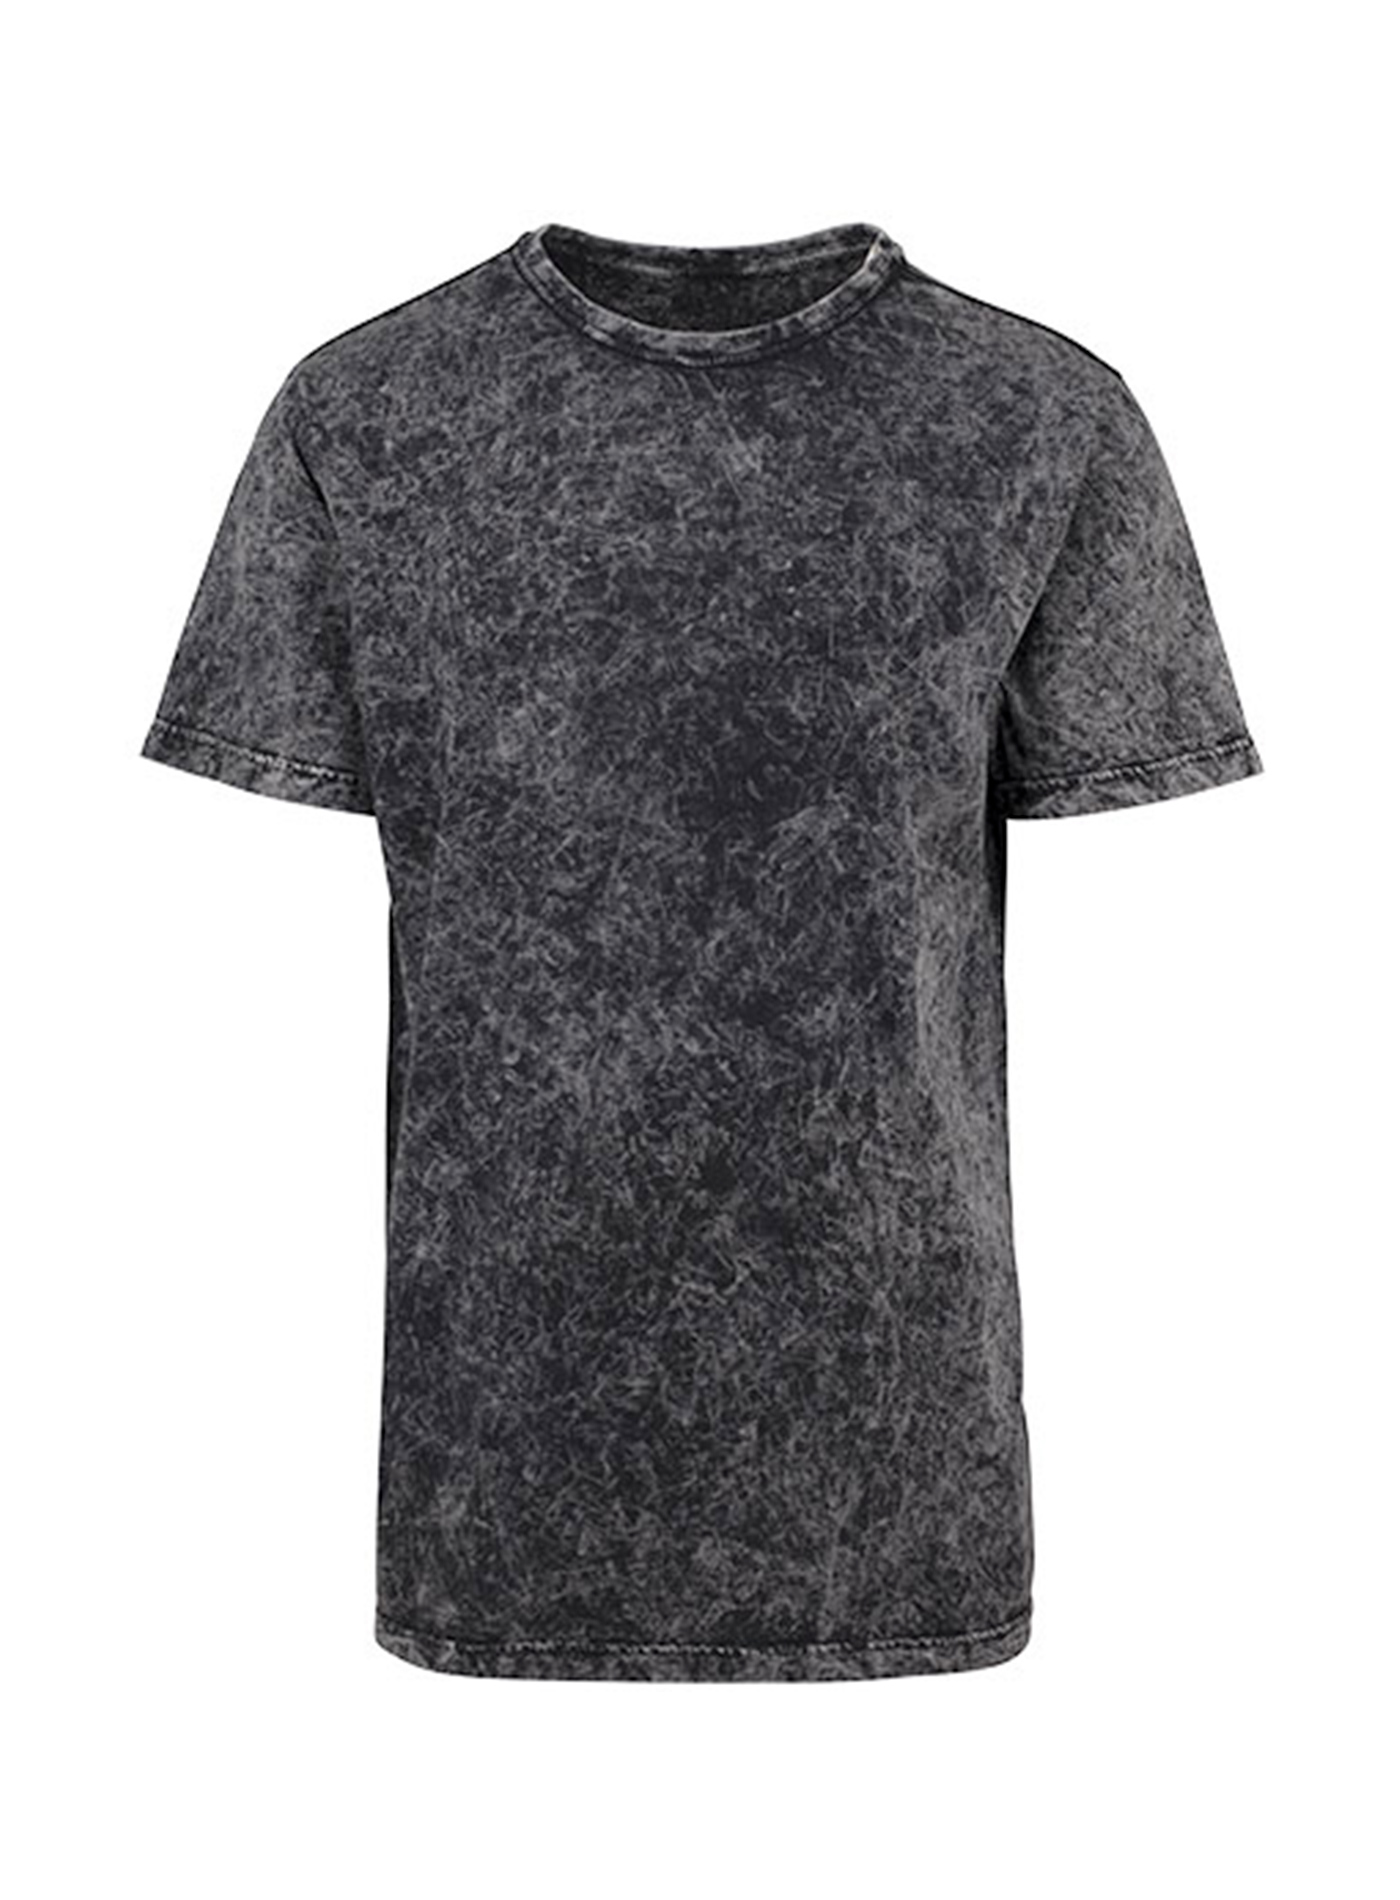 Pánské tričko Builted - Tmavě šedý melír L